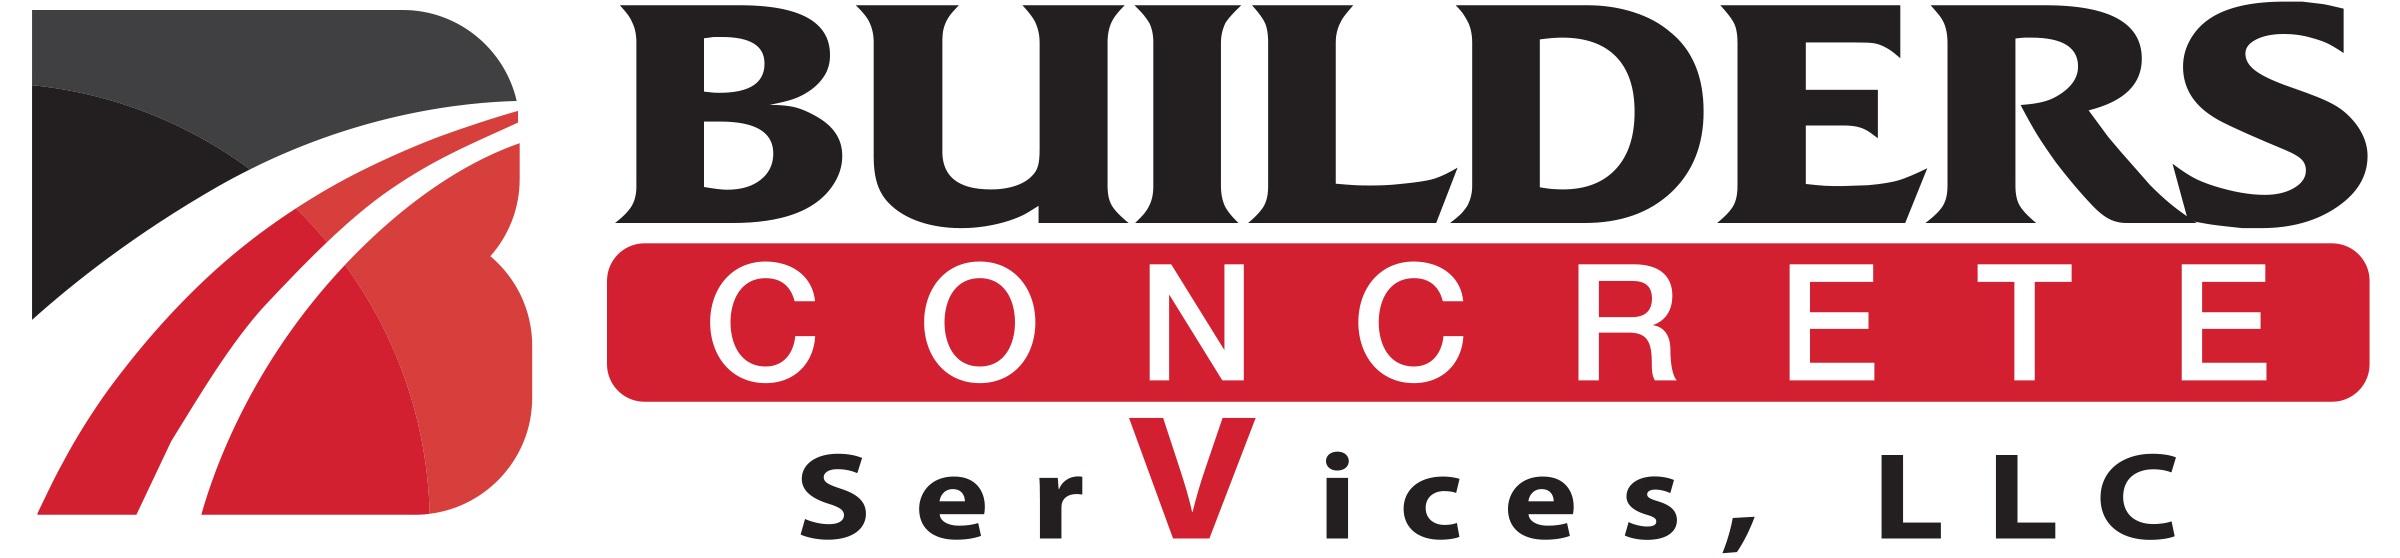 Builders Concrete Services LLC 321 Center Hillside, IL 60162